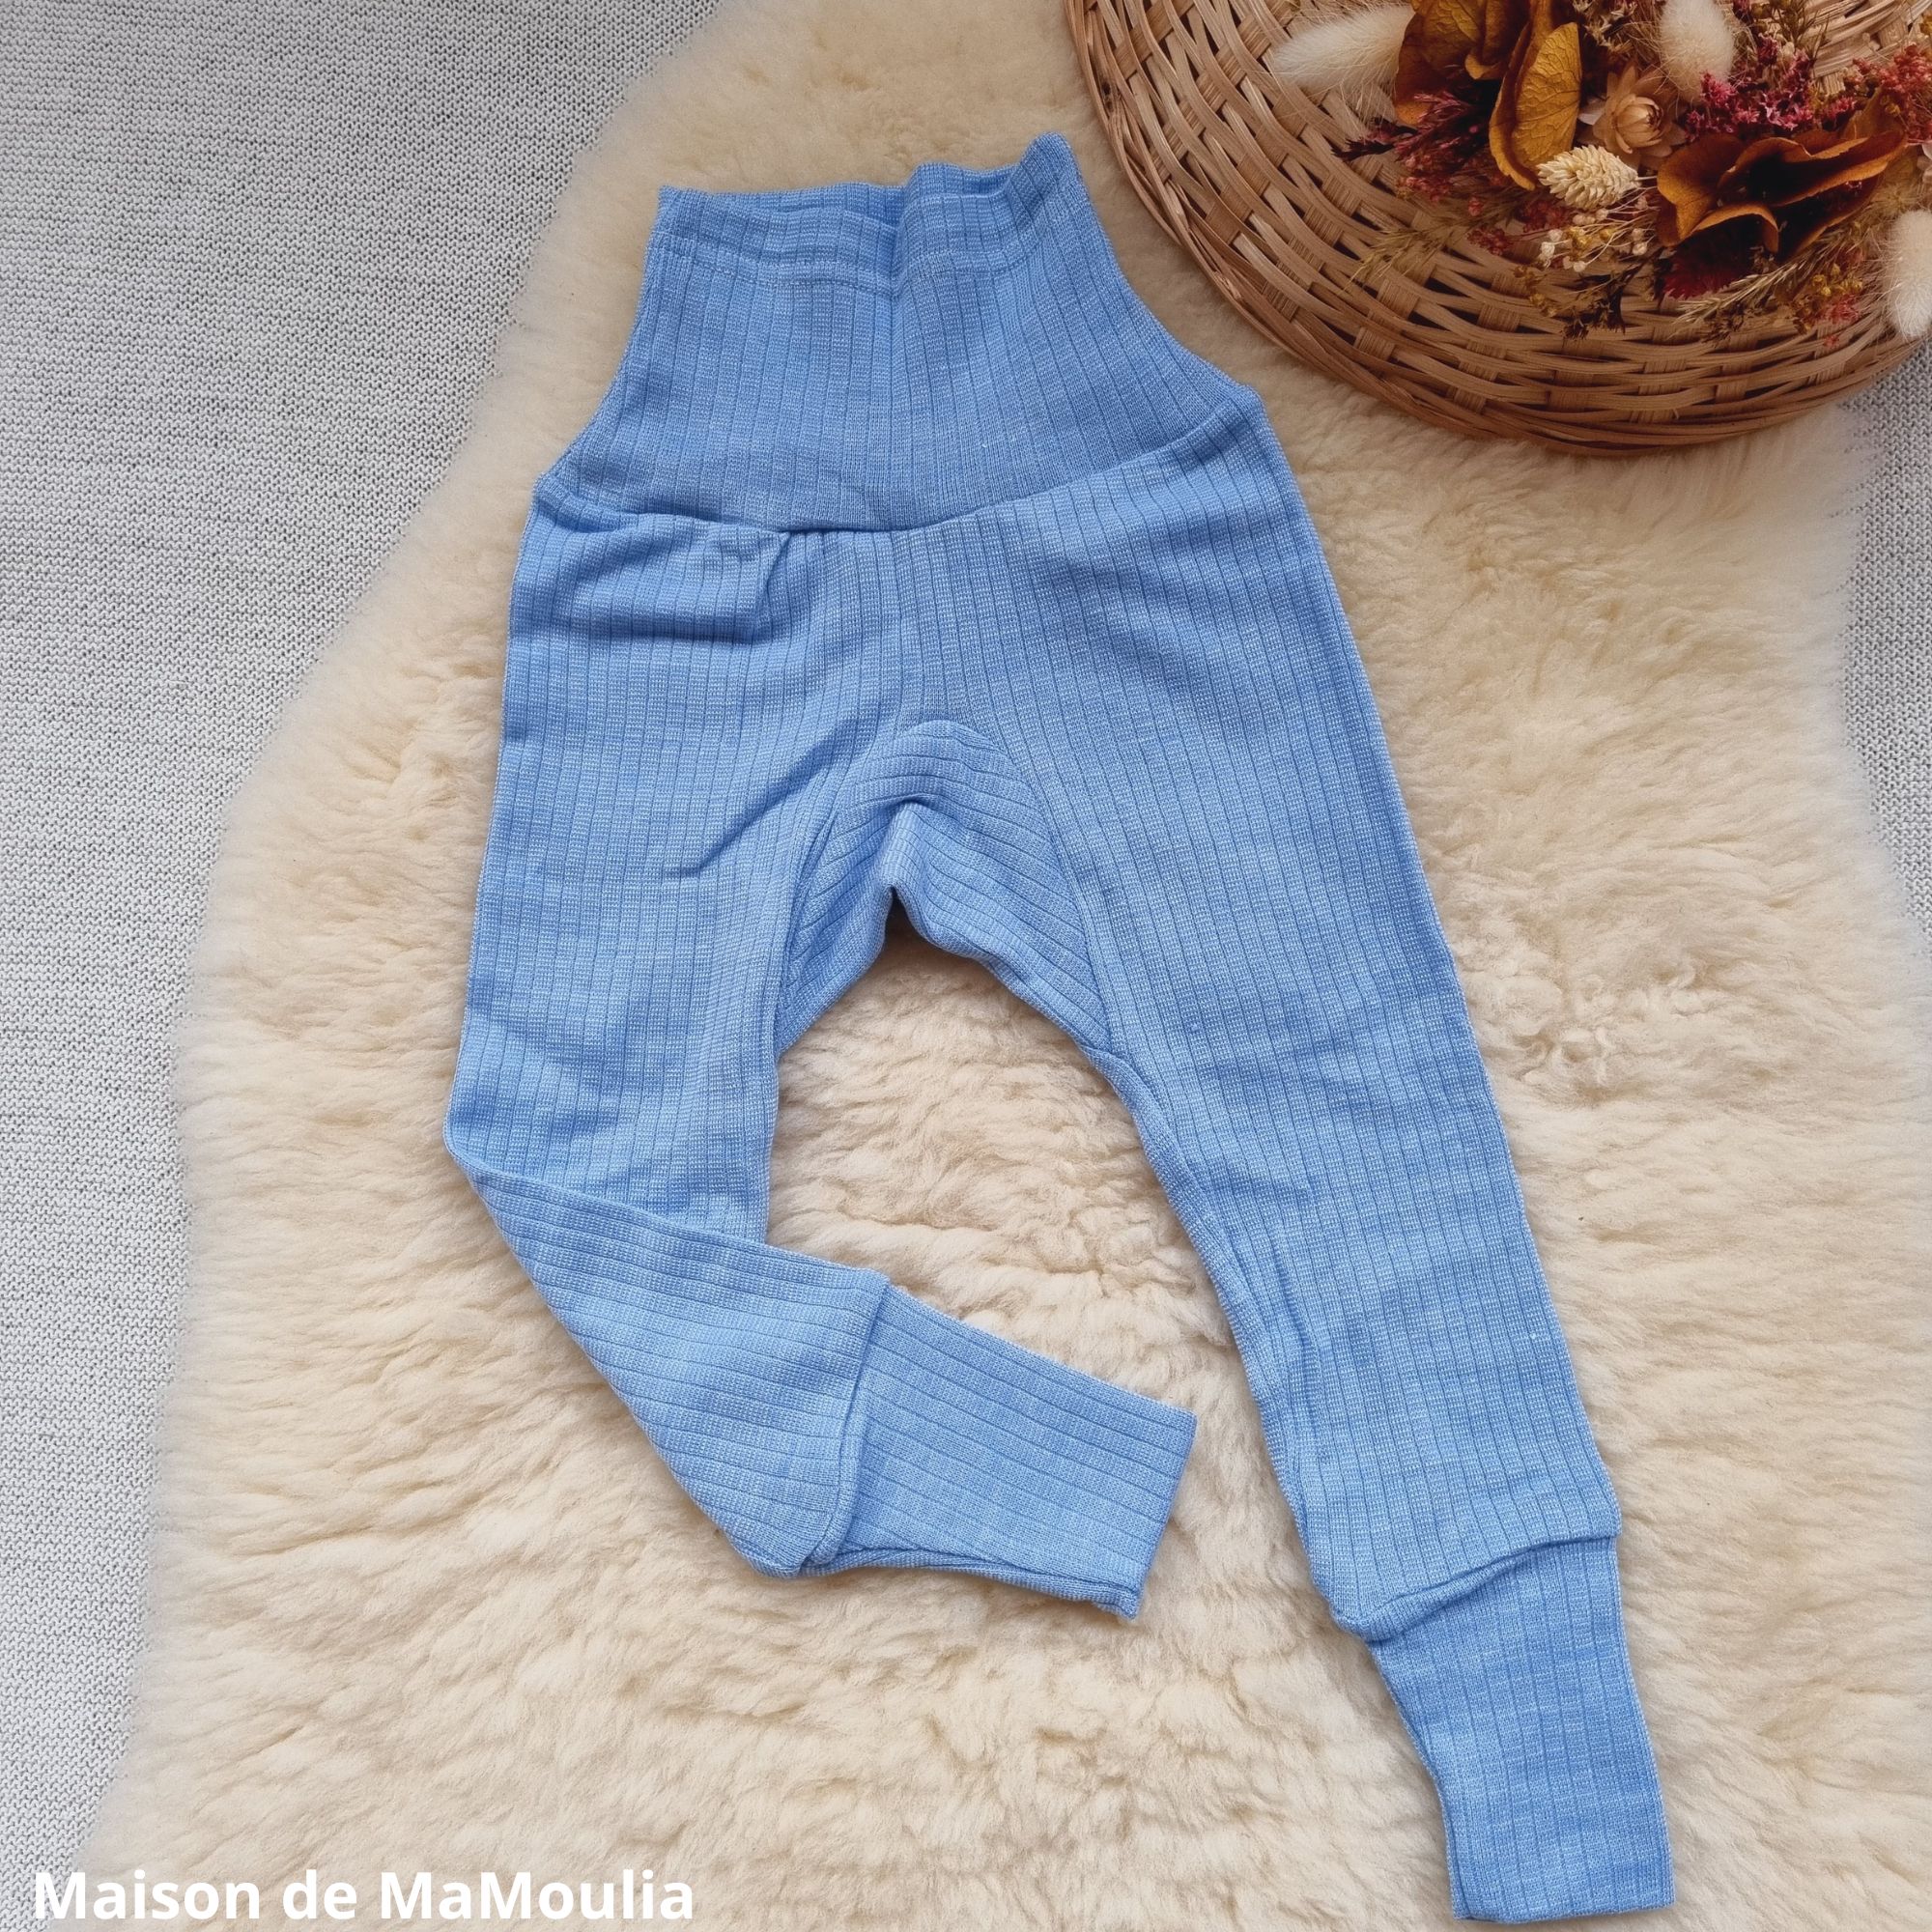 COSILANA - Pantalon ceinture large - Laine/Soie/Coton bio, Bleu ciel